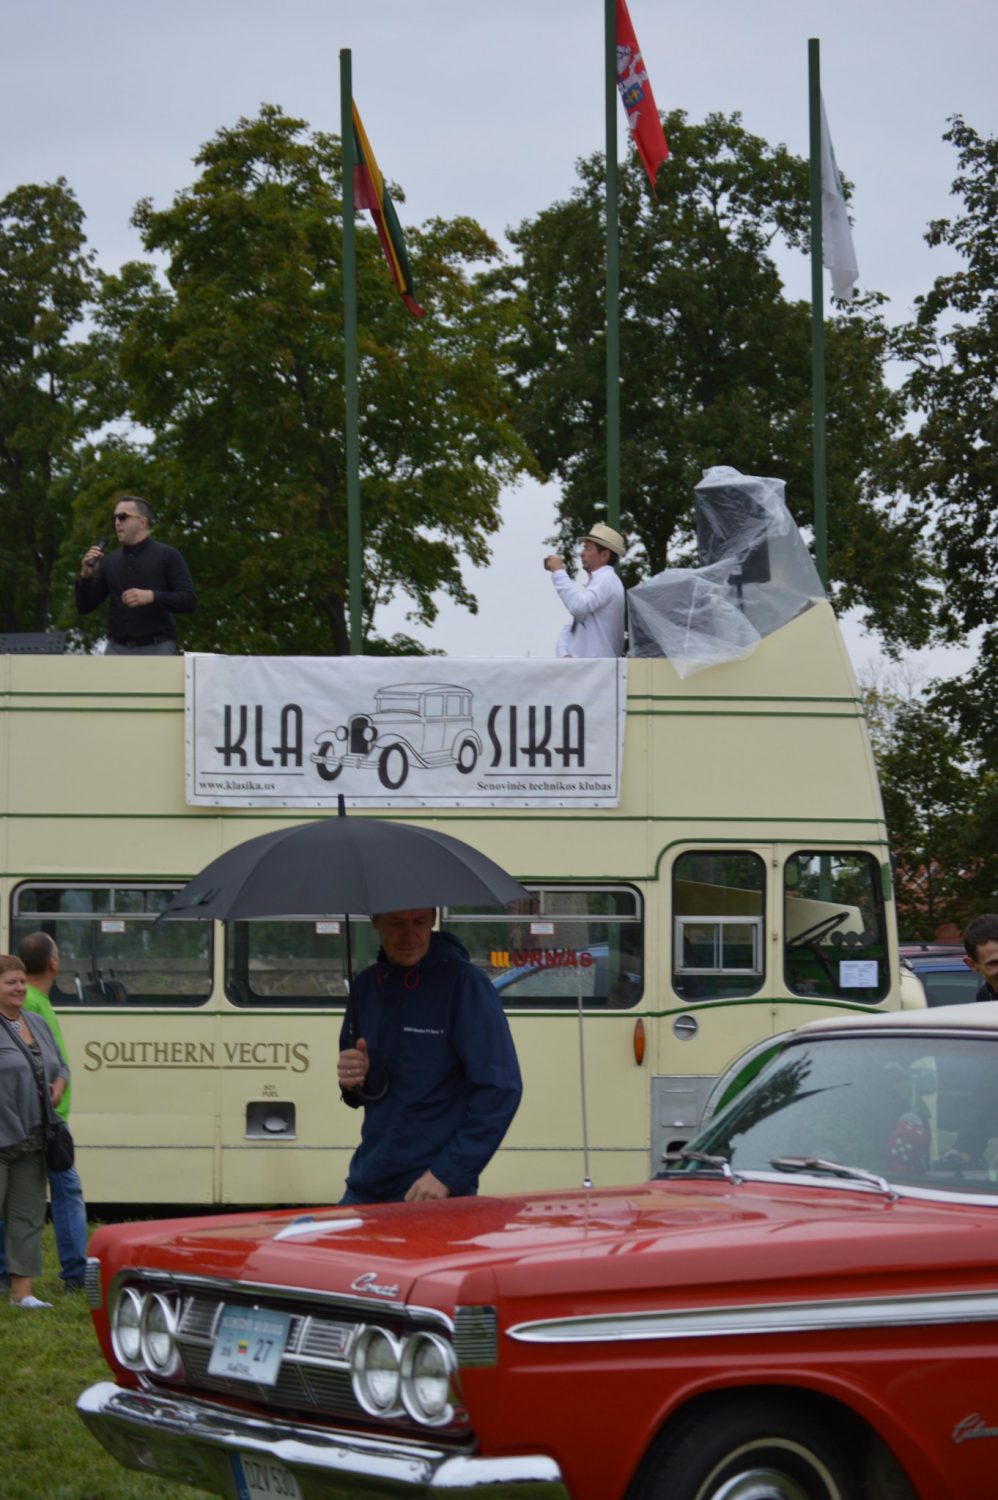 Na, o prekybos miestelio “Urmas” dviaukštis autobusas Bristol, pagamintas 1956 m., šį kartą buvo naudojamas kaip klubo “Klasika” tribūna